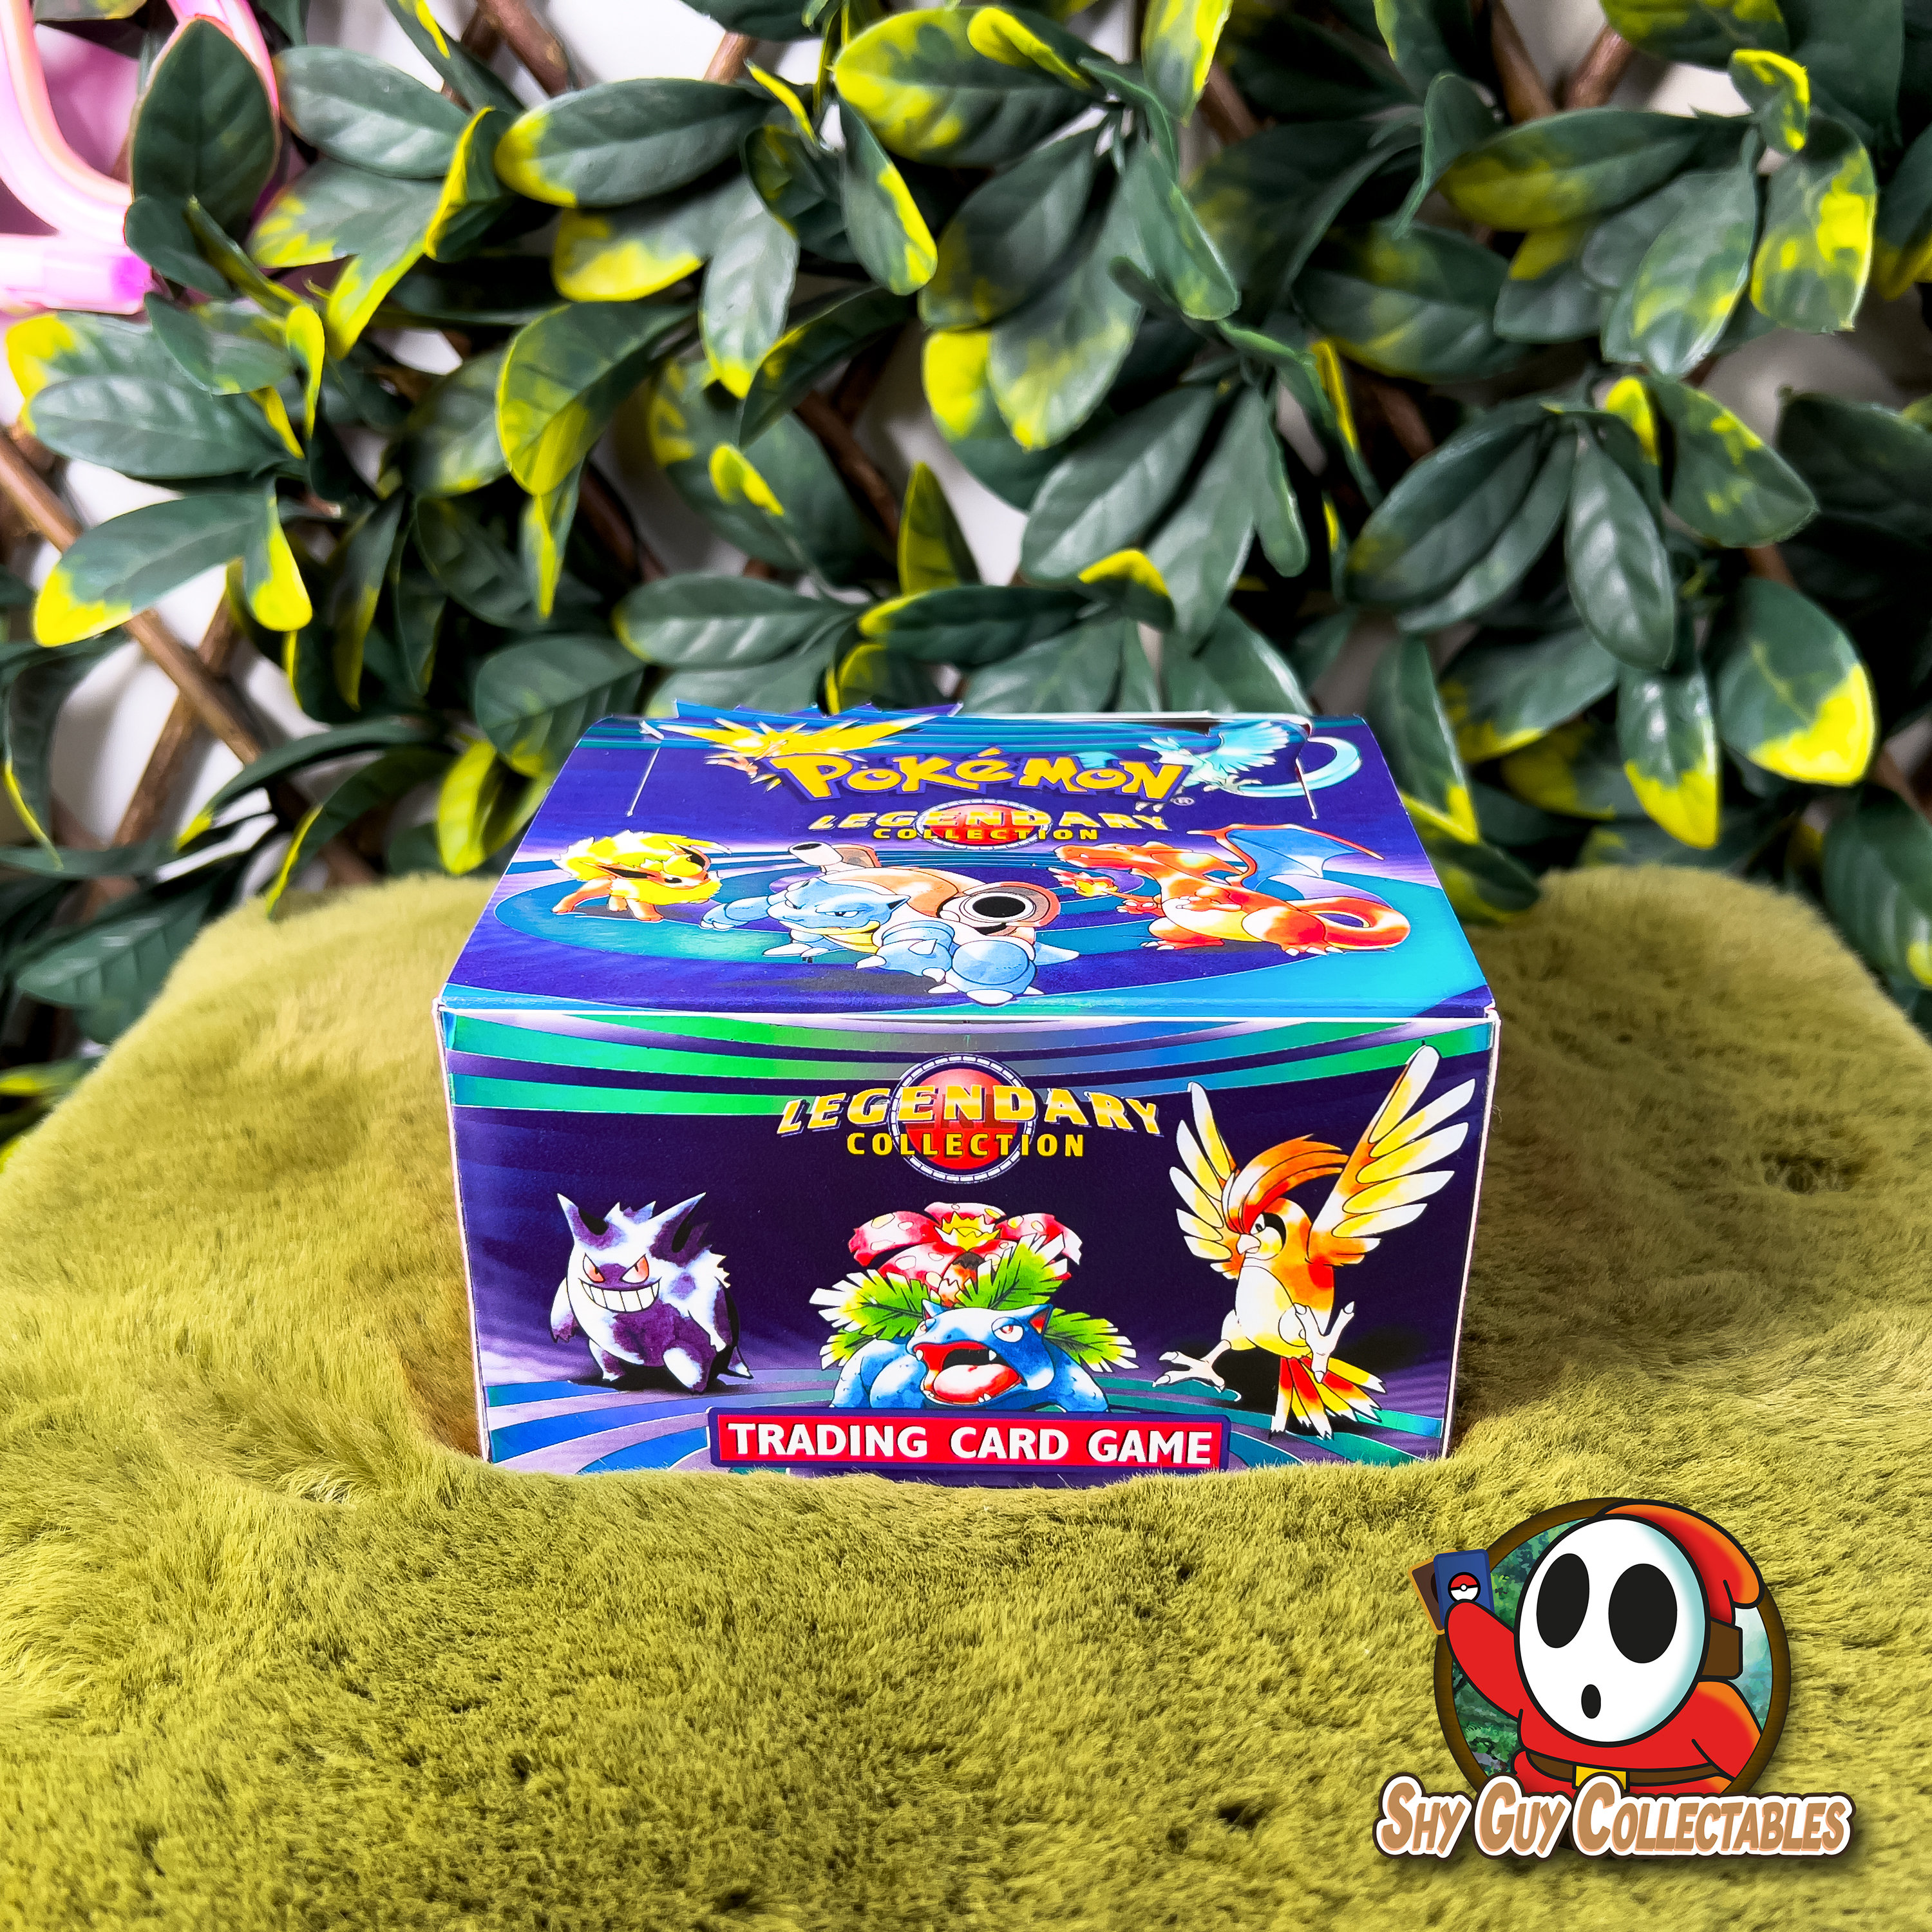 Buy Freestanding pokemon kaarten box with Custom Designs 